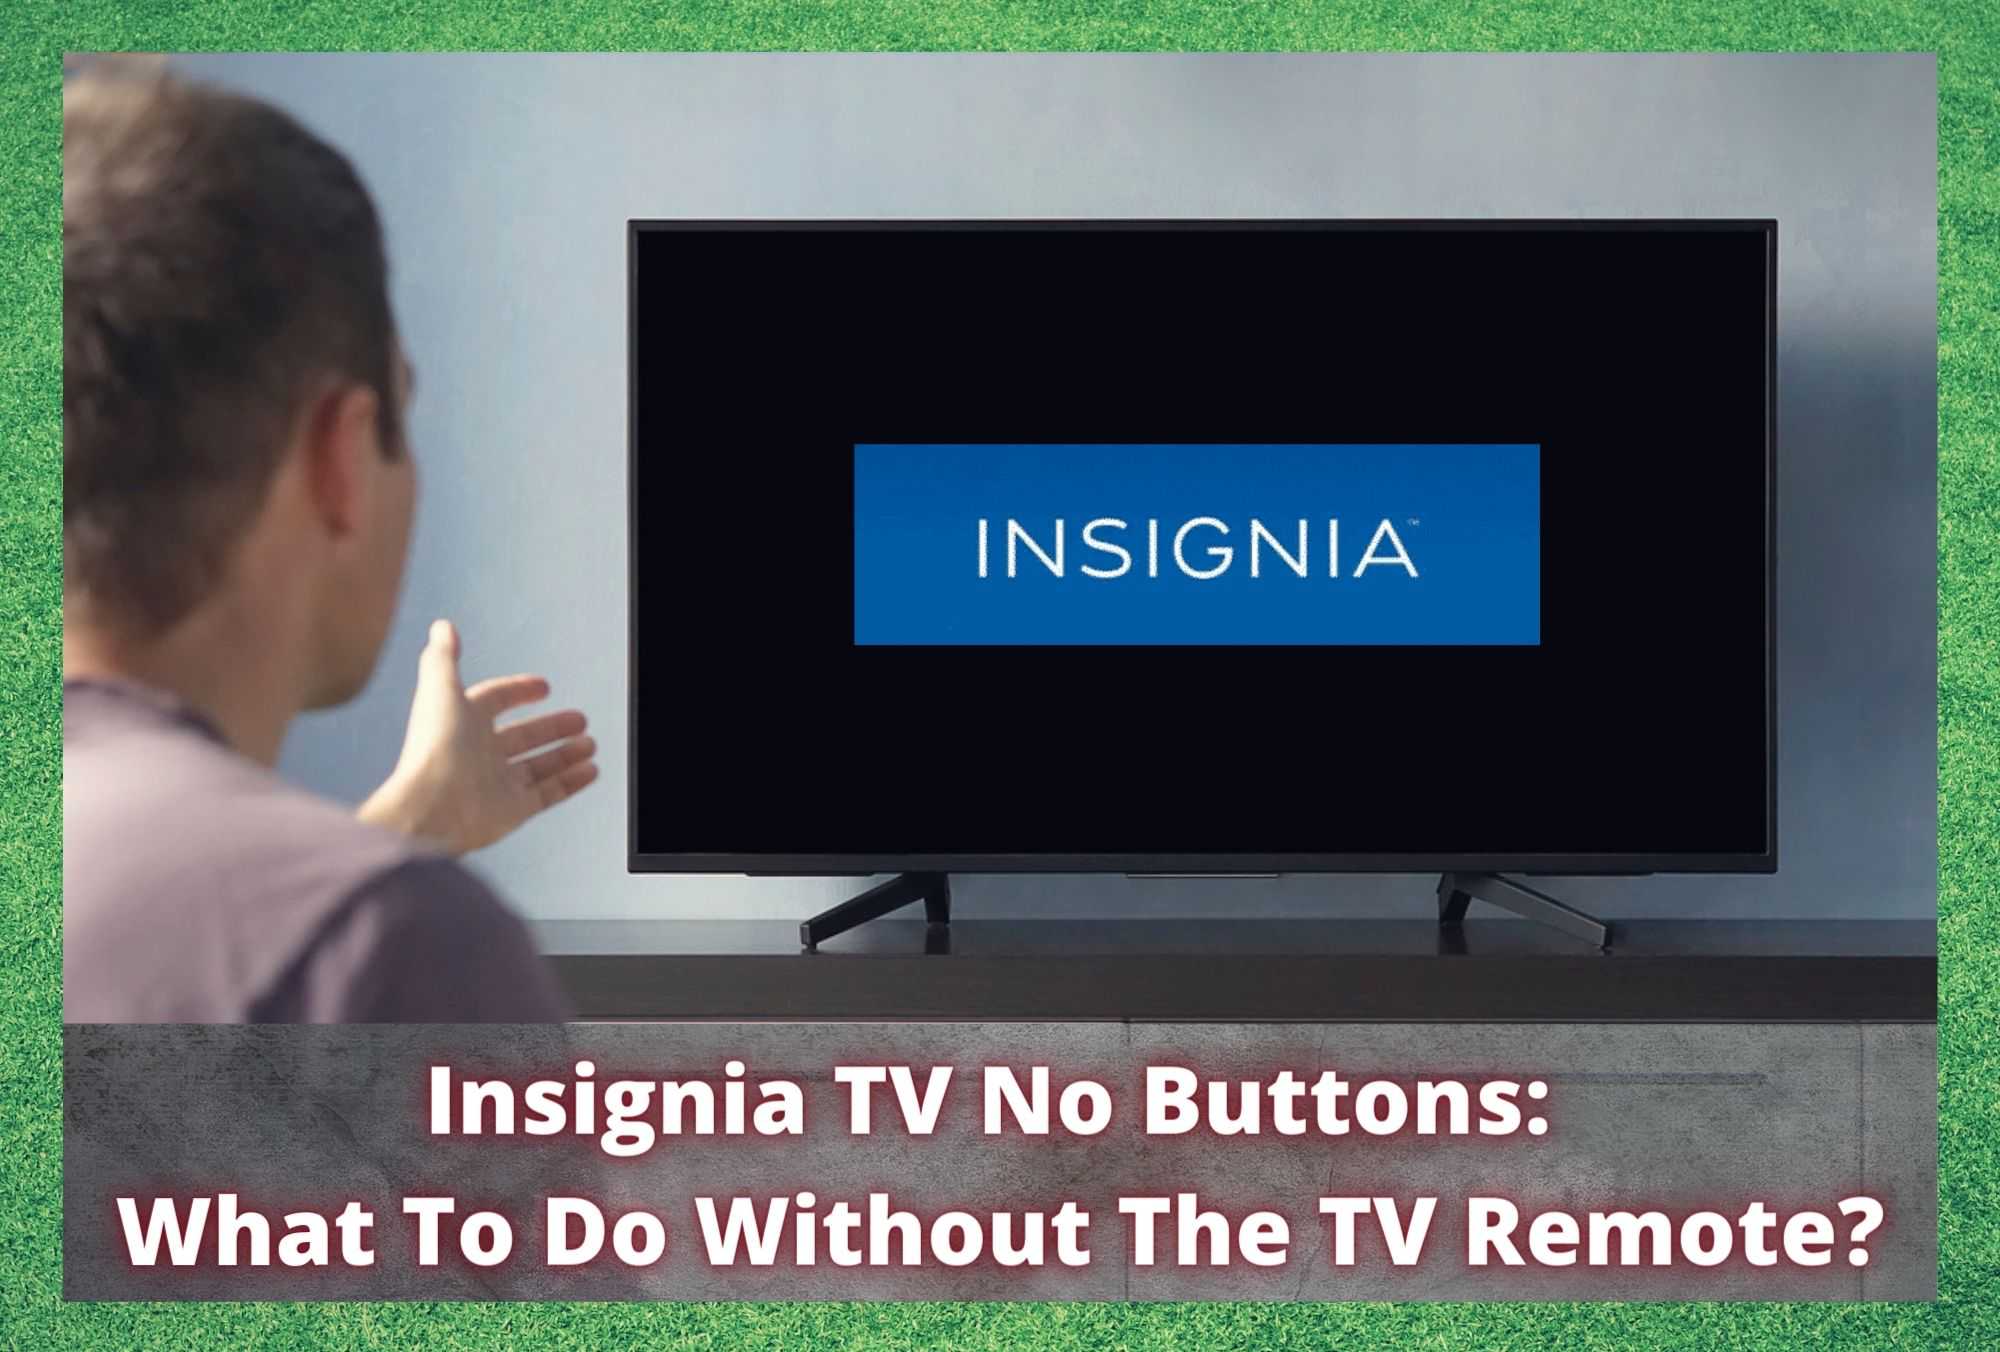 Телевизор Insignia без кнопок: что делать без пульта управления телевизором?